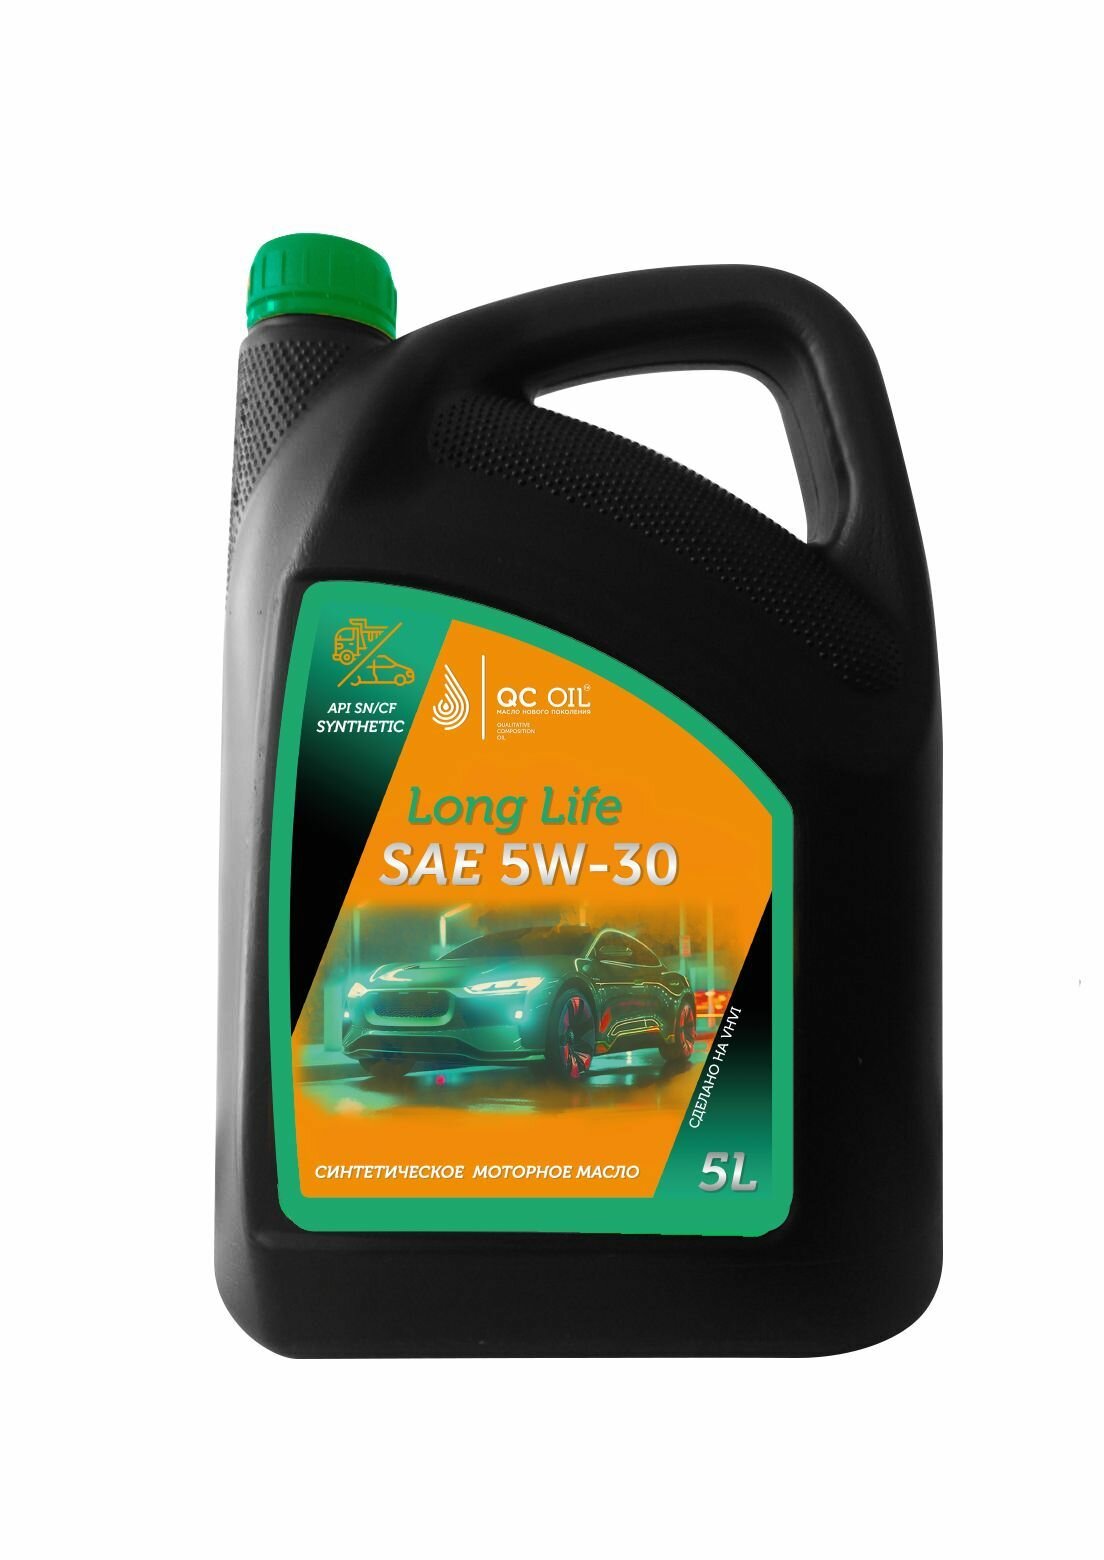 Моторное масло QC OIL Long Life SAE 5W-30 SN/CF металлоплакирующее синтетическое, канистра 5л